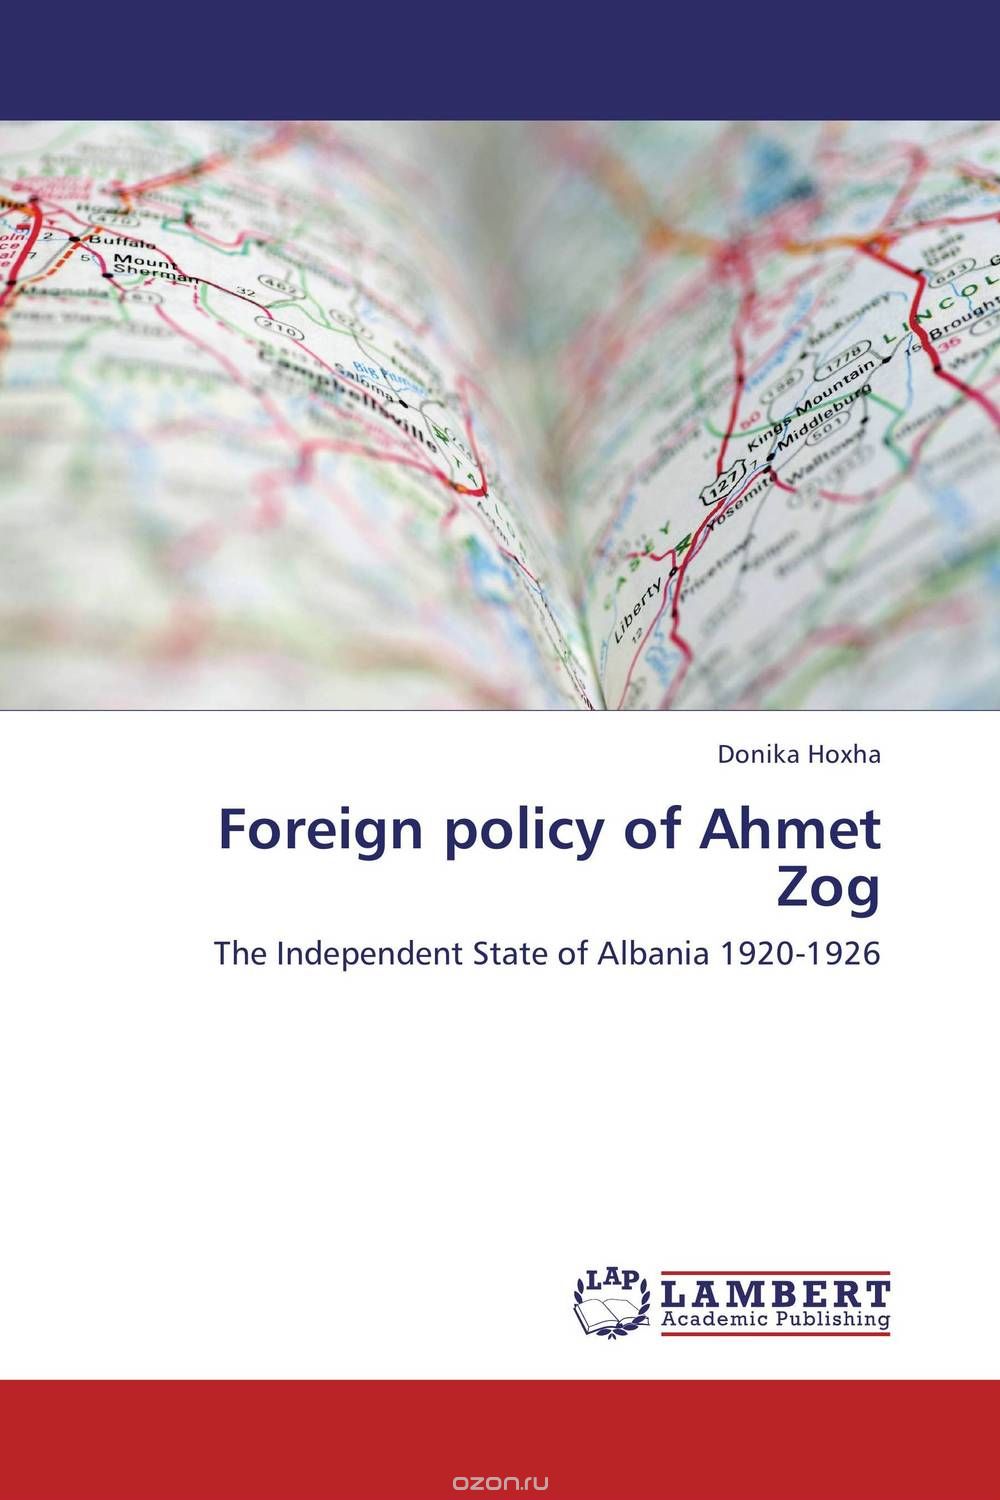 Скачать книгу "Foreign policy of Ahmet Zog"